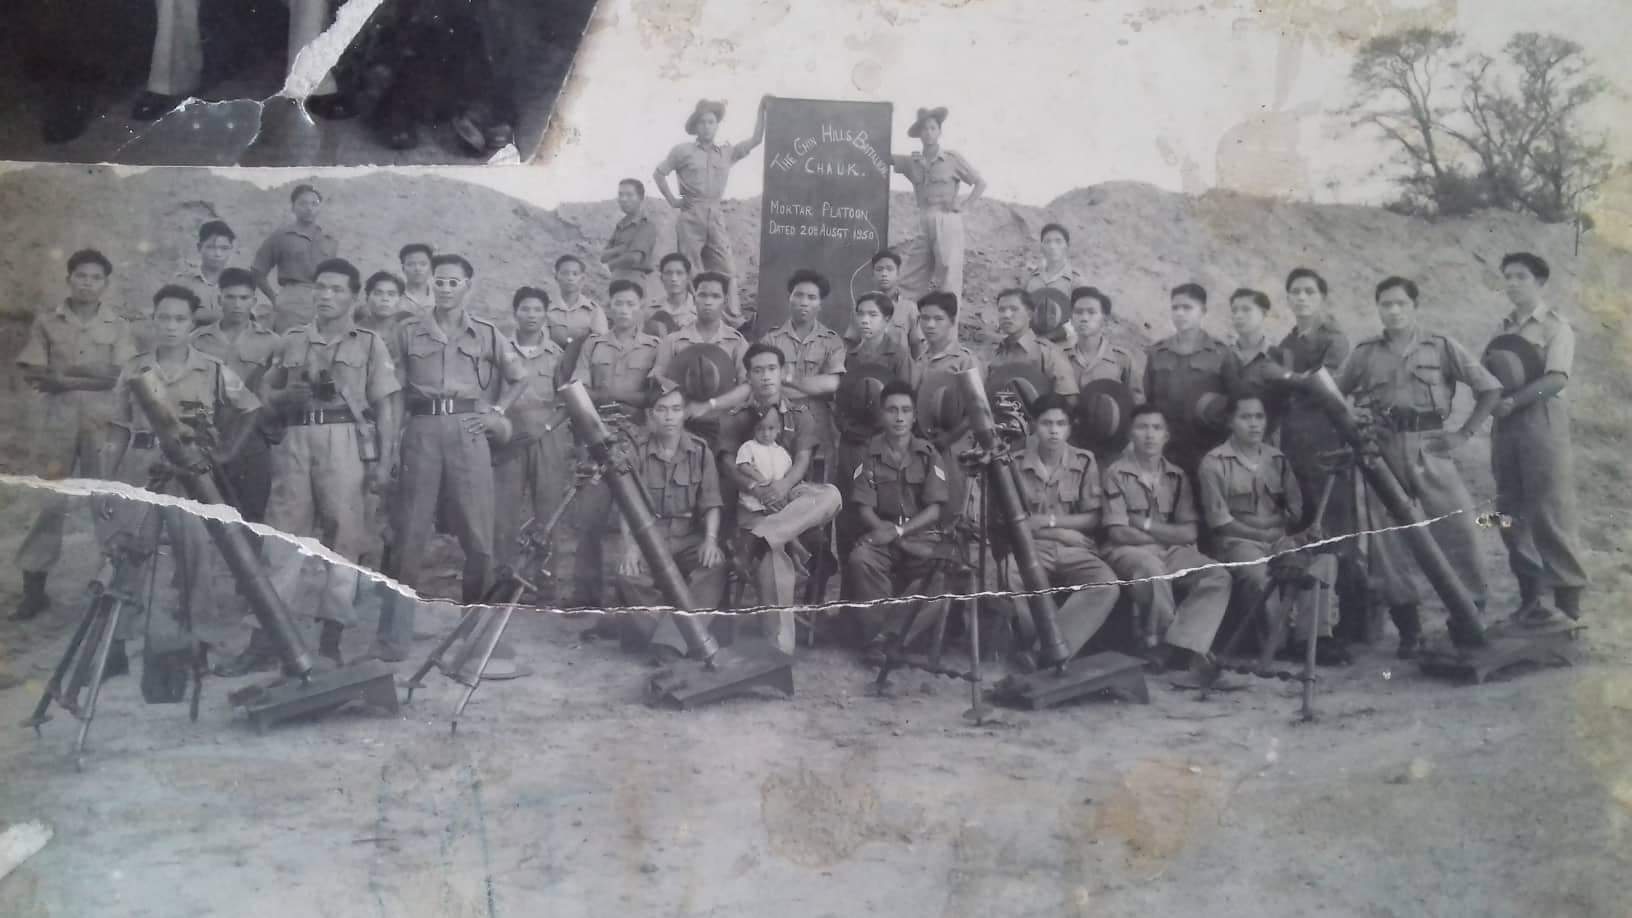 Mortar platoon of the Chin Hills Battalion (3rd Chin Rifles) at Chauk, 1950